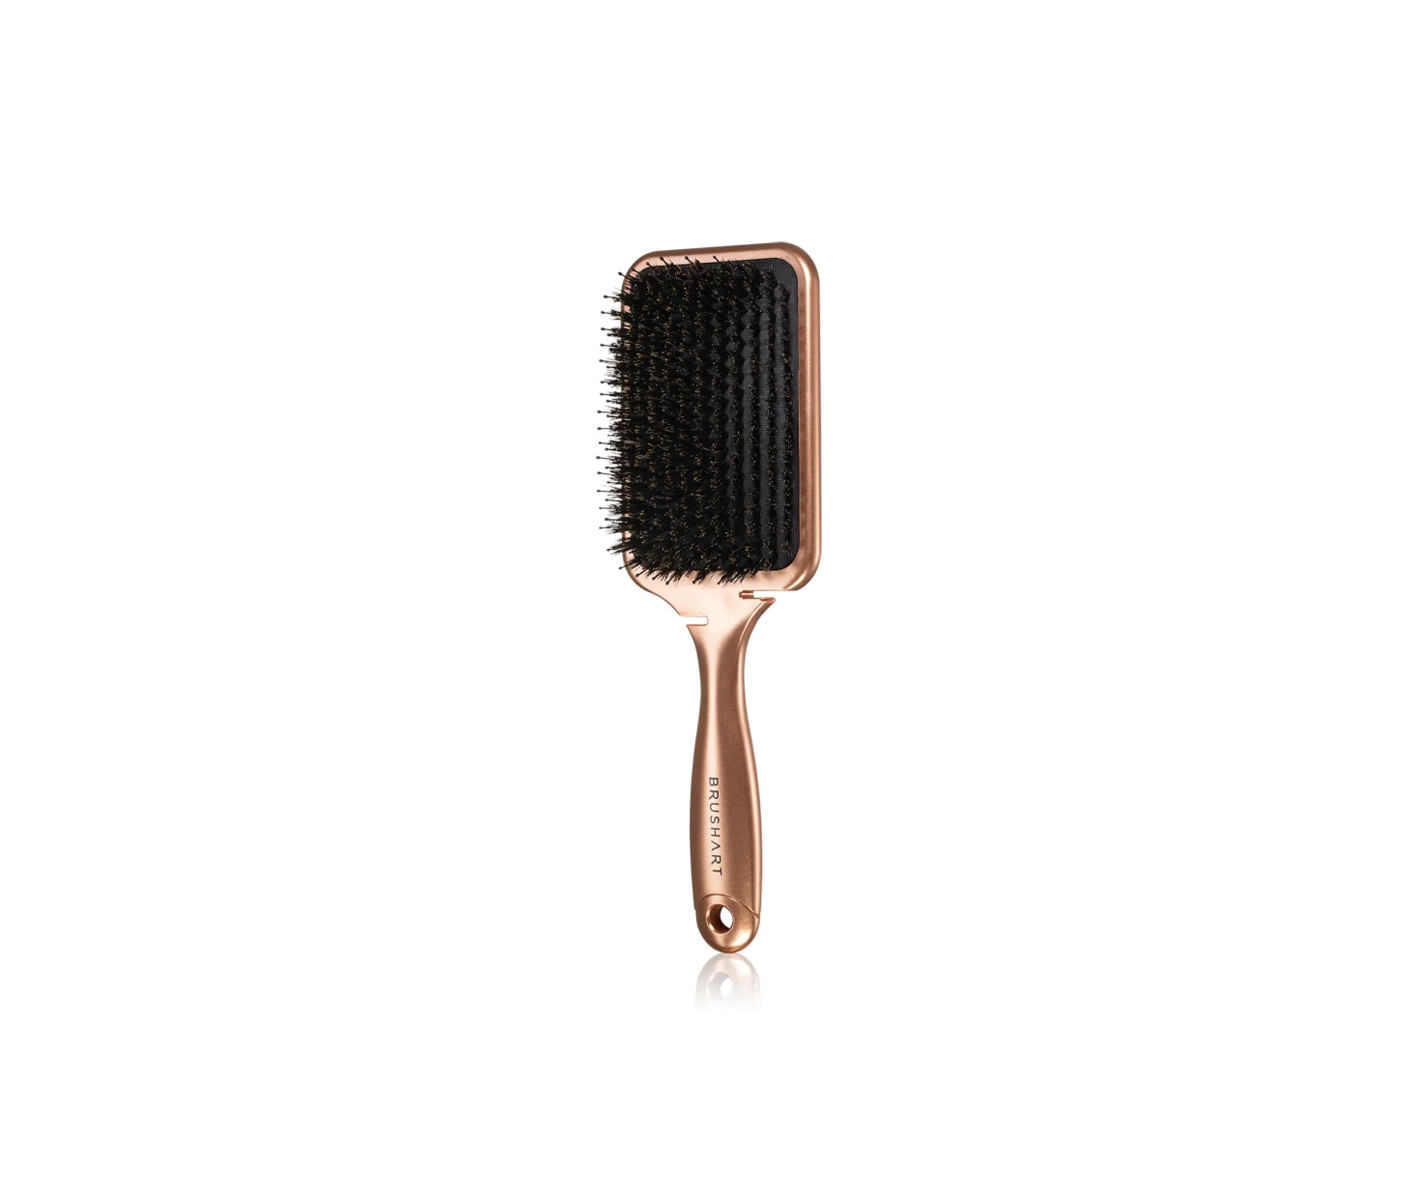 BrushArt, Hair Boar bristle paddle hairbrush, szczotka do włosów z włosiem dzika